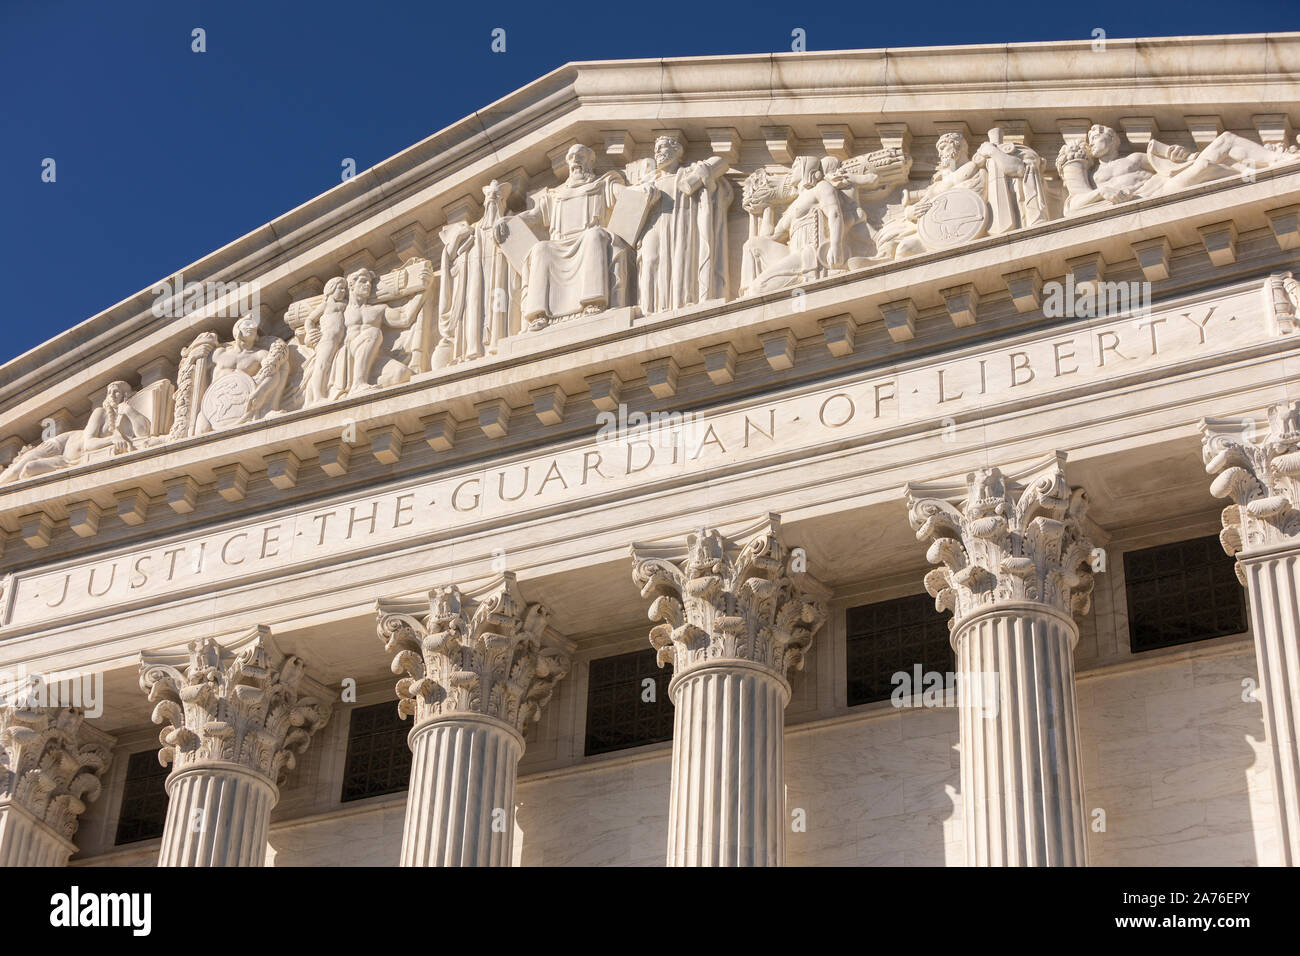 WASHINGTON, DC, Stati Uniti d'America - La Corte suprema degli Stati Uniti, edificio posteriore. La giustizia è la custode della libertà incisione. Foto Stock